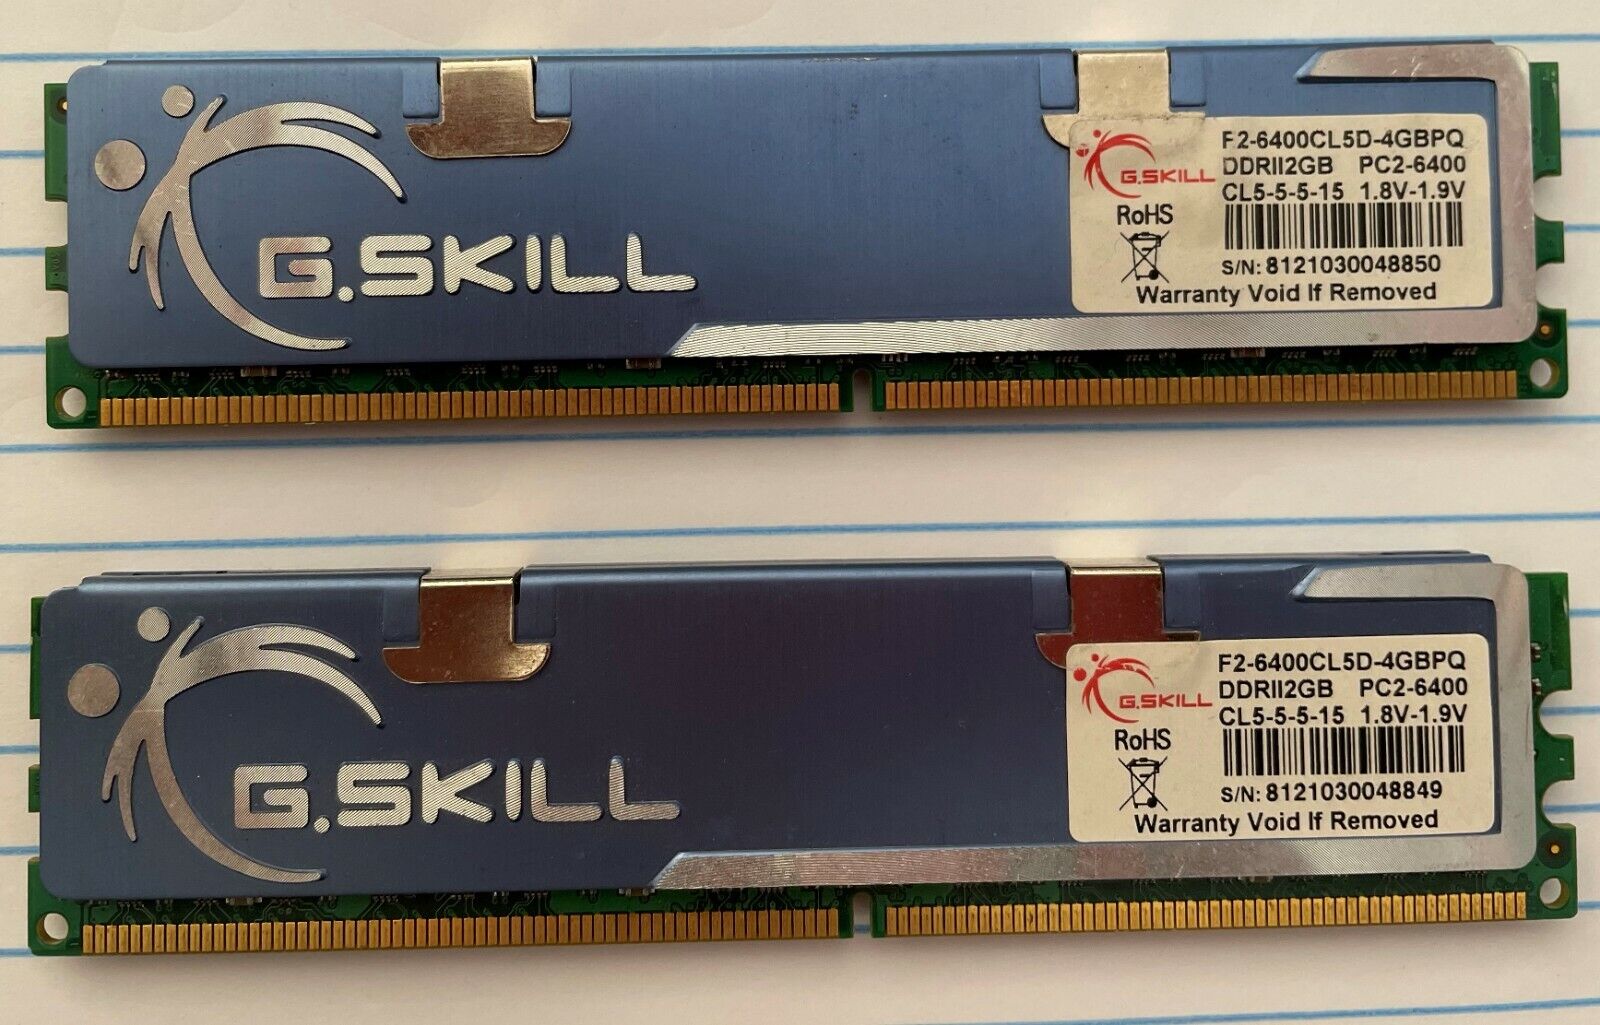 G.SKILL 4GB 2x2GB DDR2 800MHZ F2-6400CL5D-4GBPQ DIMM 240pin Desktop Memory RAM